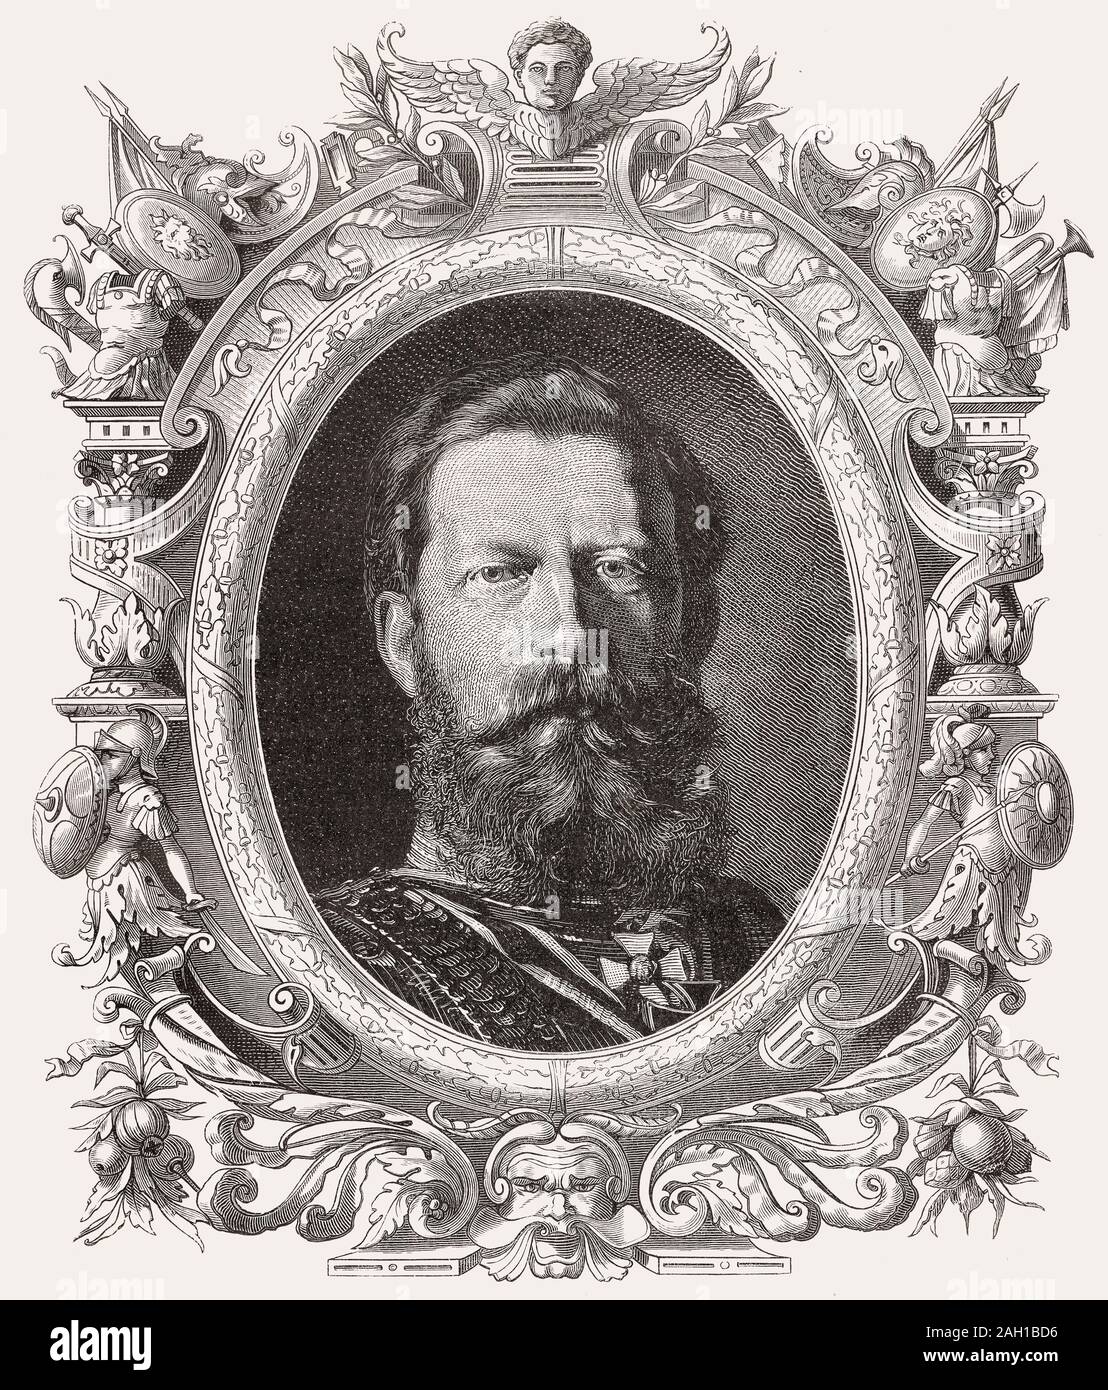 Guglielmo II, 1859 - 1941, ultimo imperatore tedesco e re di Prussia Foto Stock